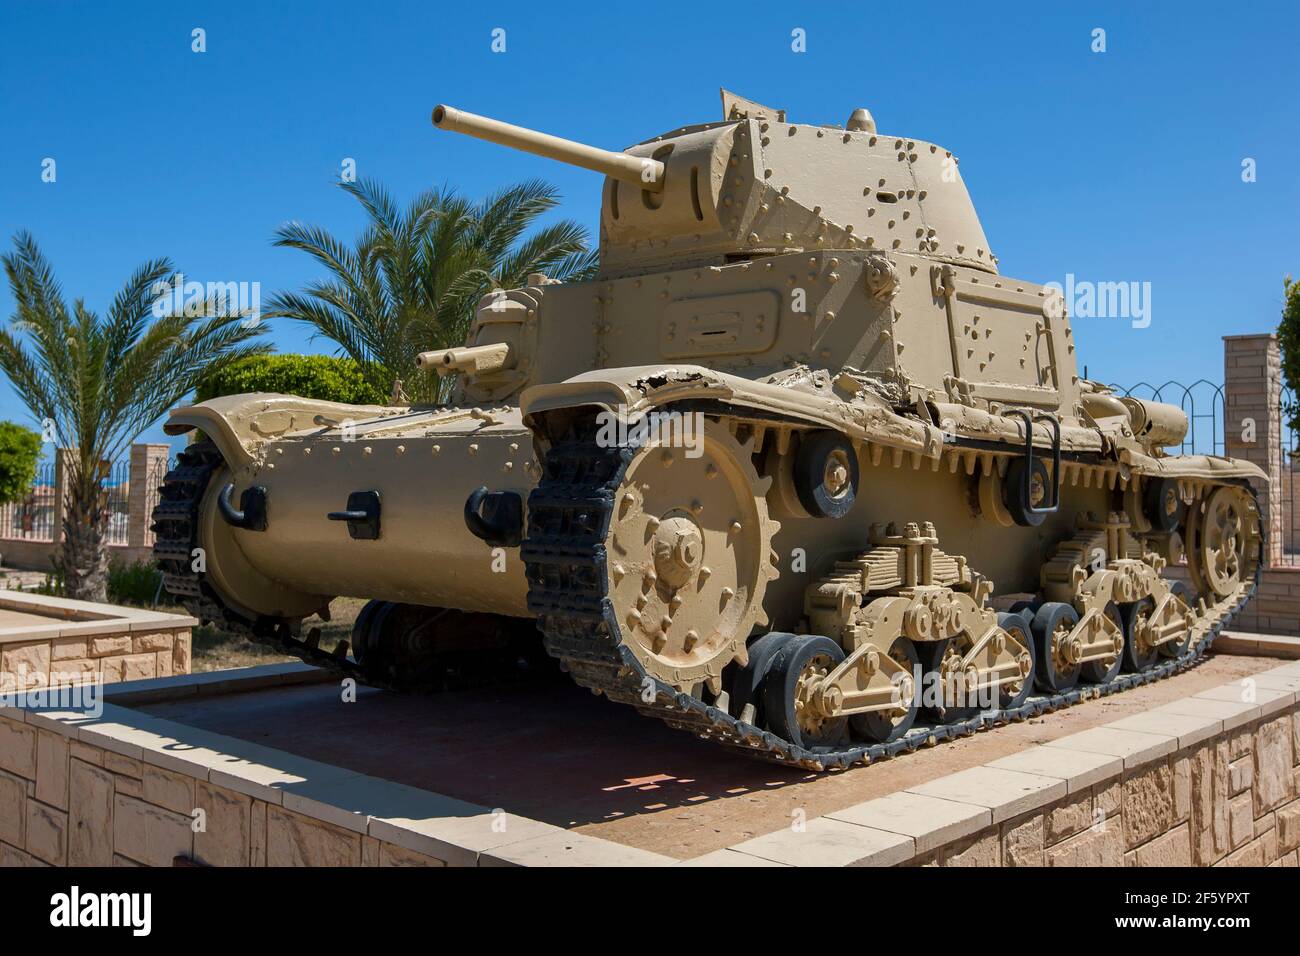 Un tanque italiano Carro Armato M13/40 en exhibición en el Museo de Guerra el Alamein en Egipto. Este tanque fue utilizado durante la campaña del Desierto Occidental de WW2. Foto de stock